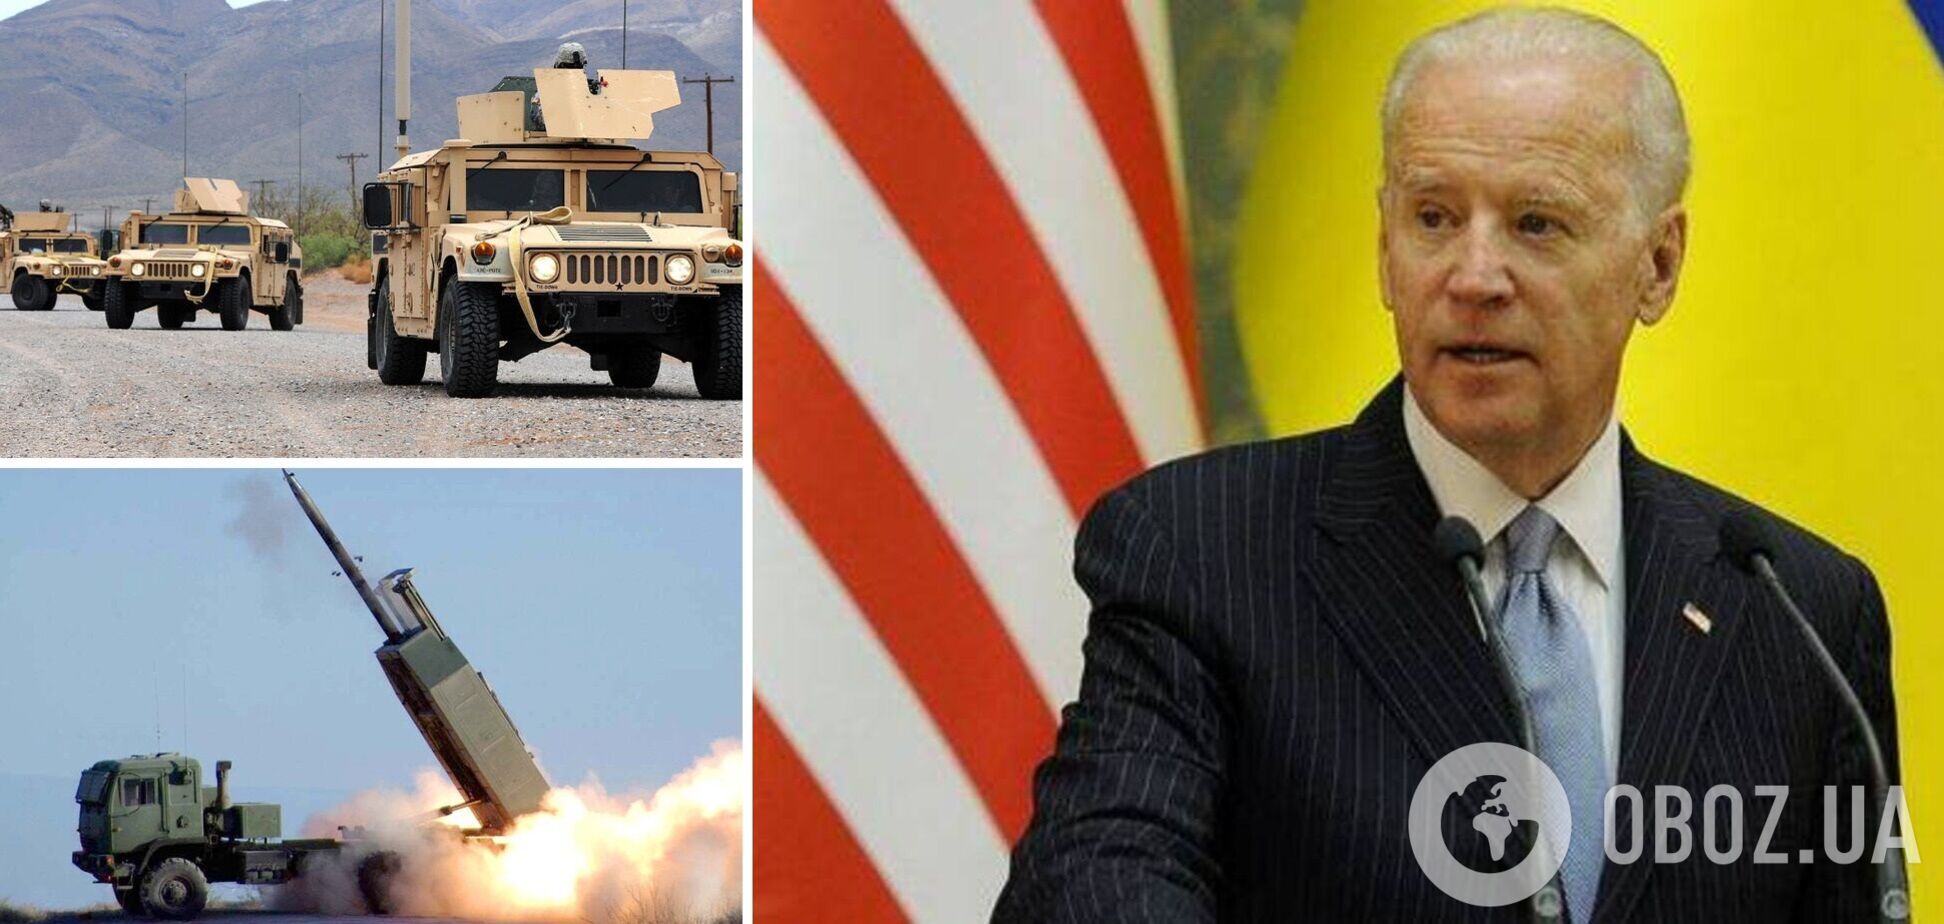 Байден объявил новый пакет военной помощи Украине со снарядами для HIMARS и артиллерии